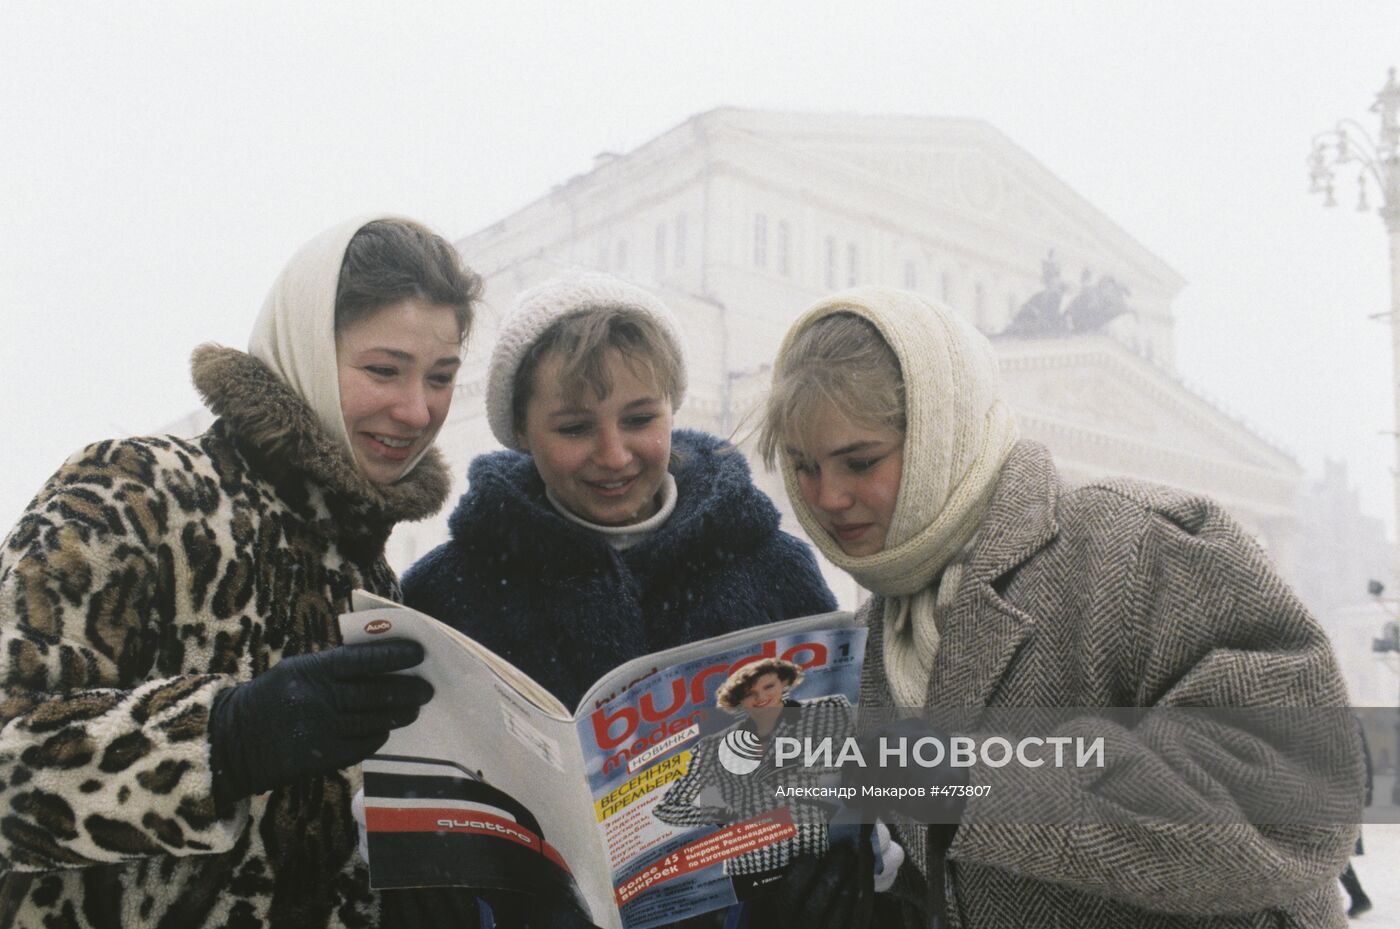 Журнал "Бурда моден" в СССР